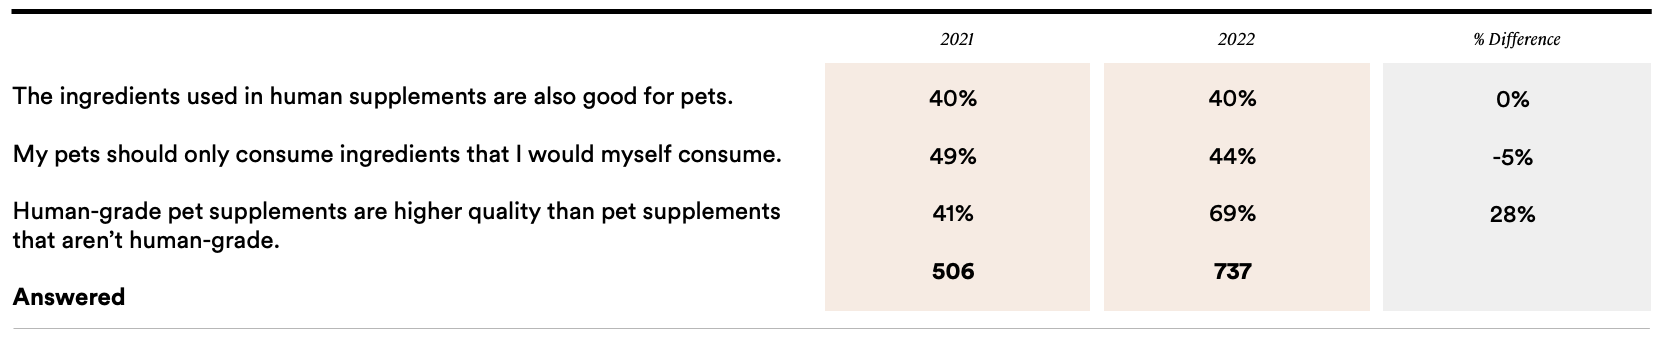 YOY Comparison, General Pet Parents, Ingredient Perceptions